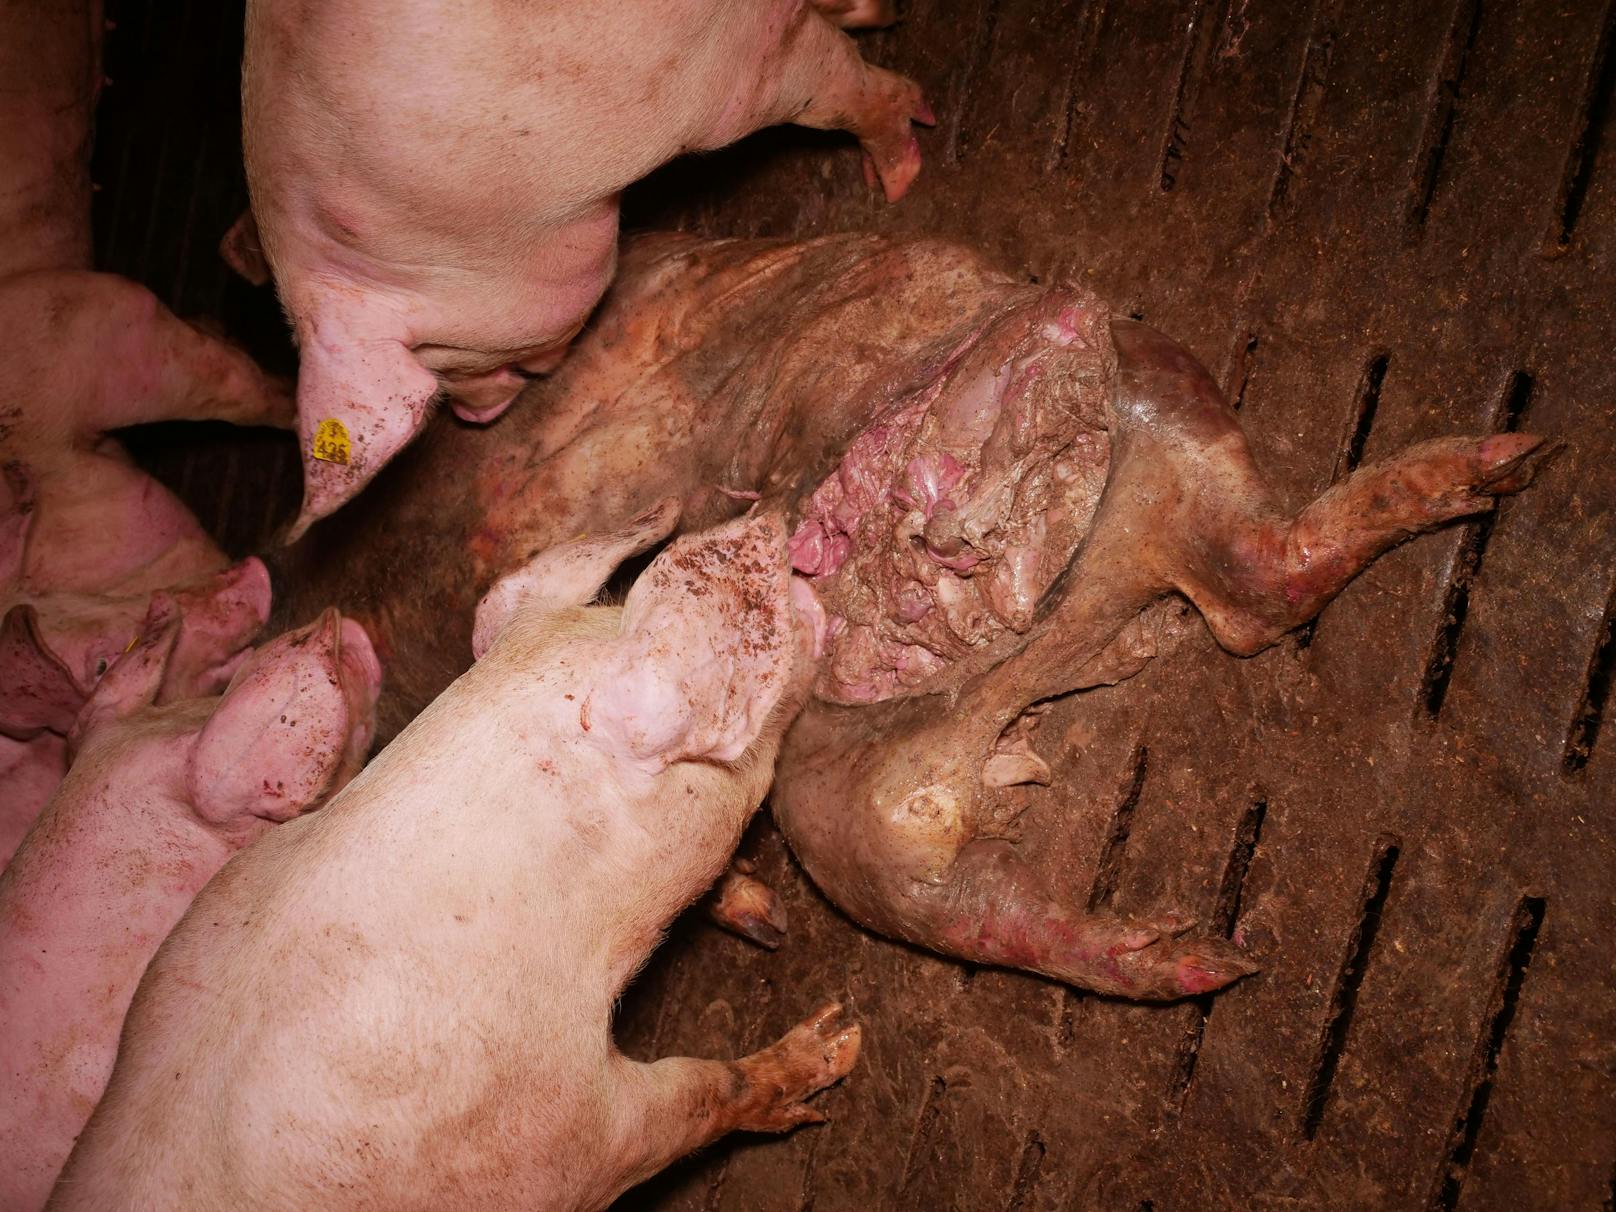 Im Schweinestall herrschen den Bilder zufolge erschreckende Zustände.